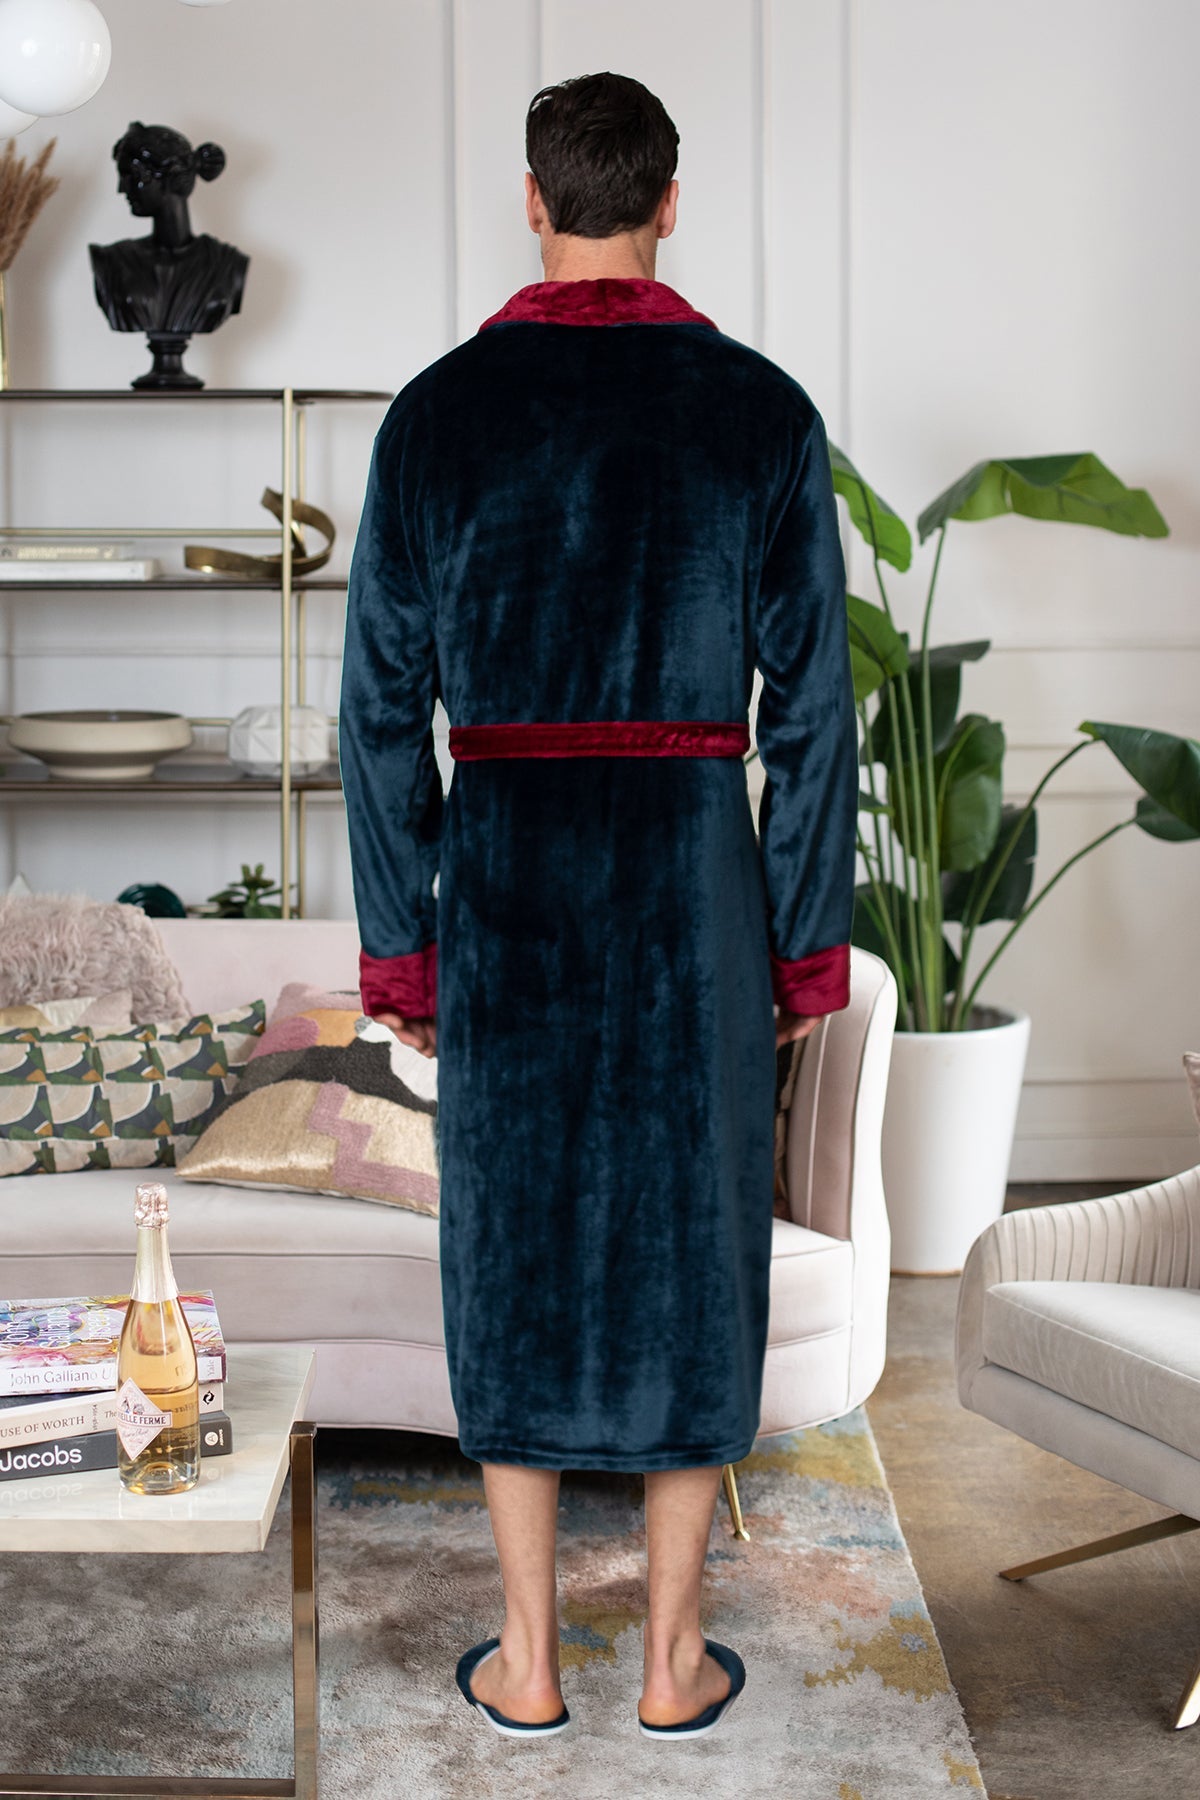 Men's Shawl Collar Fleece Robe Robes - Plushie Depot